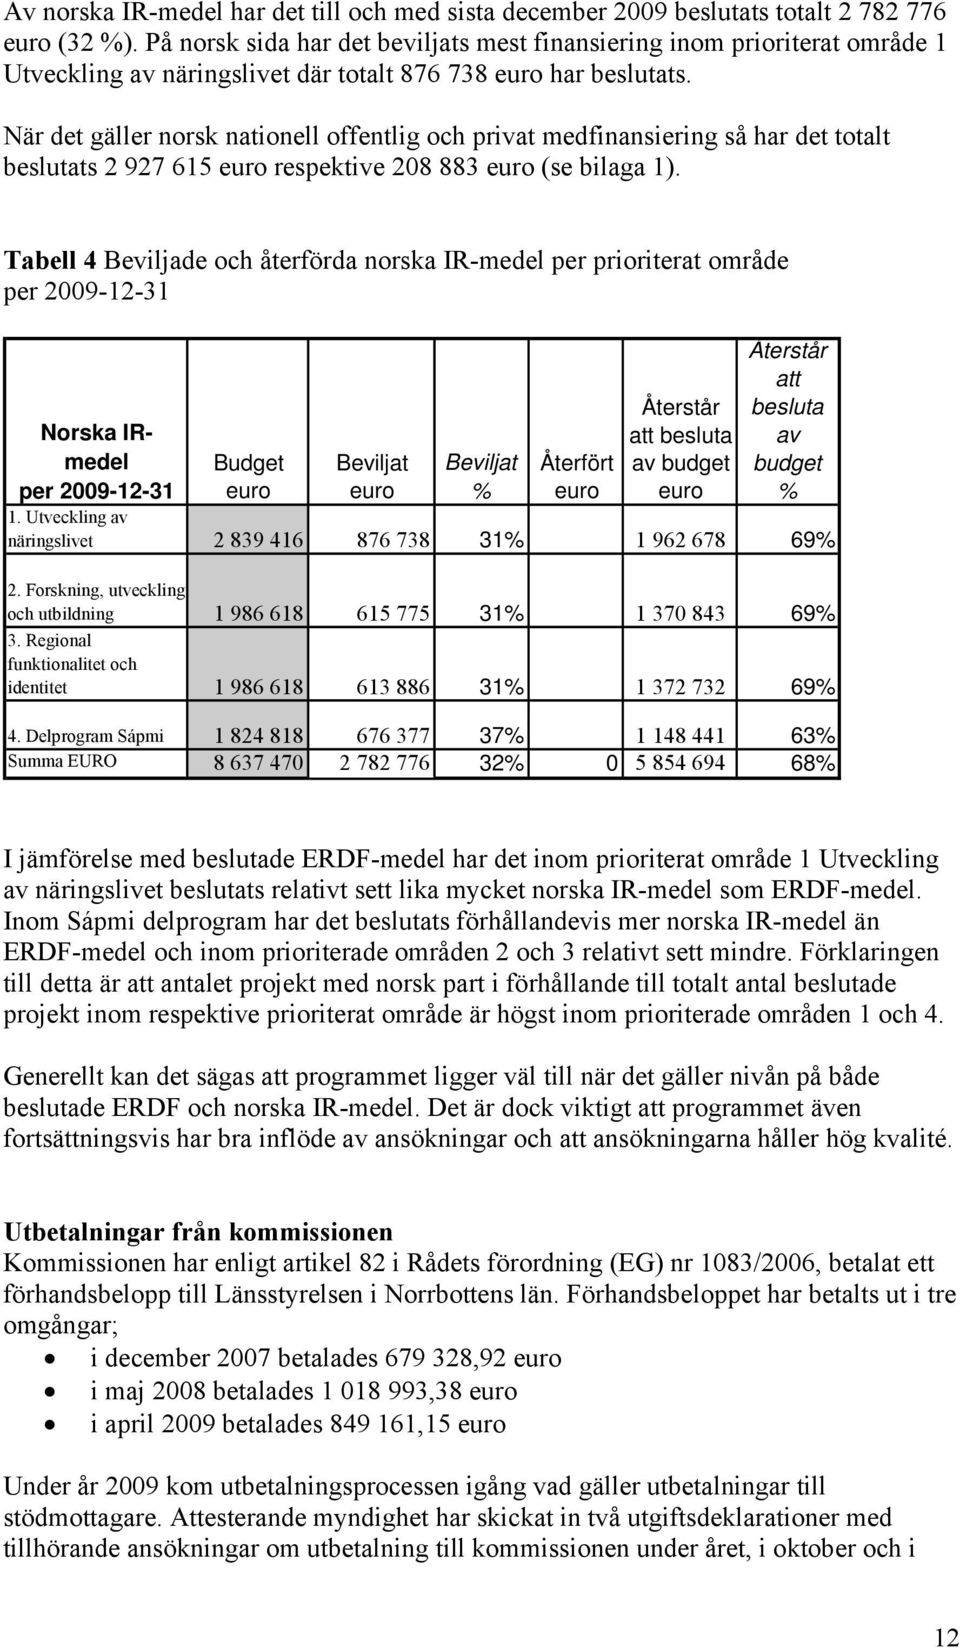 När det gäller norsk nationell offentlig och privat medfinansiering så har det totalt beslutats 2 927 615 euro respektive 208 883 euro (se bilaga 1).